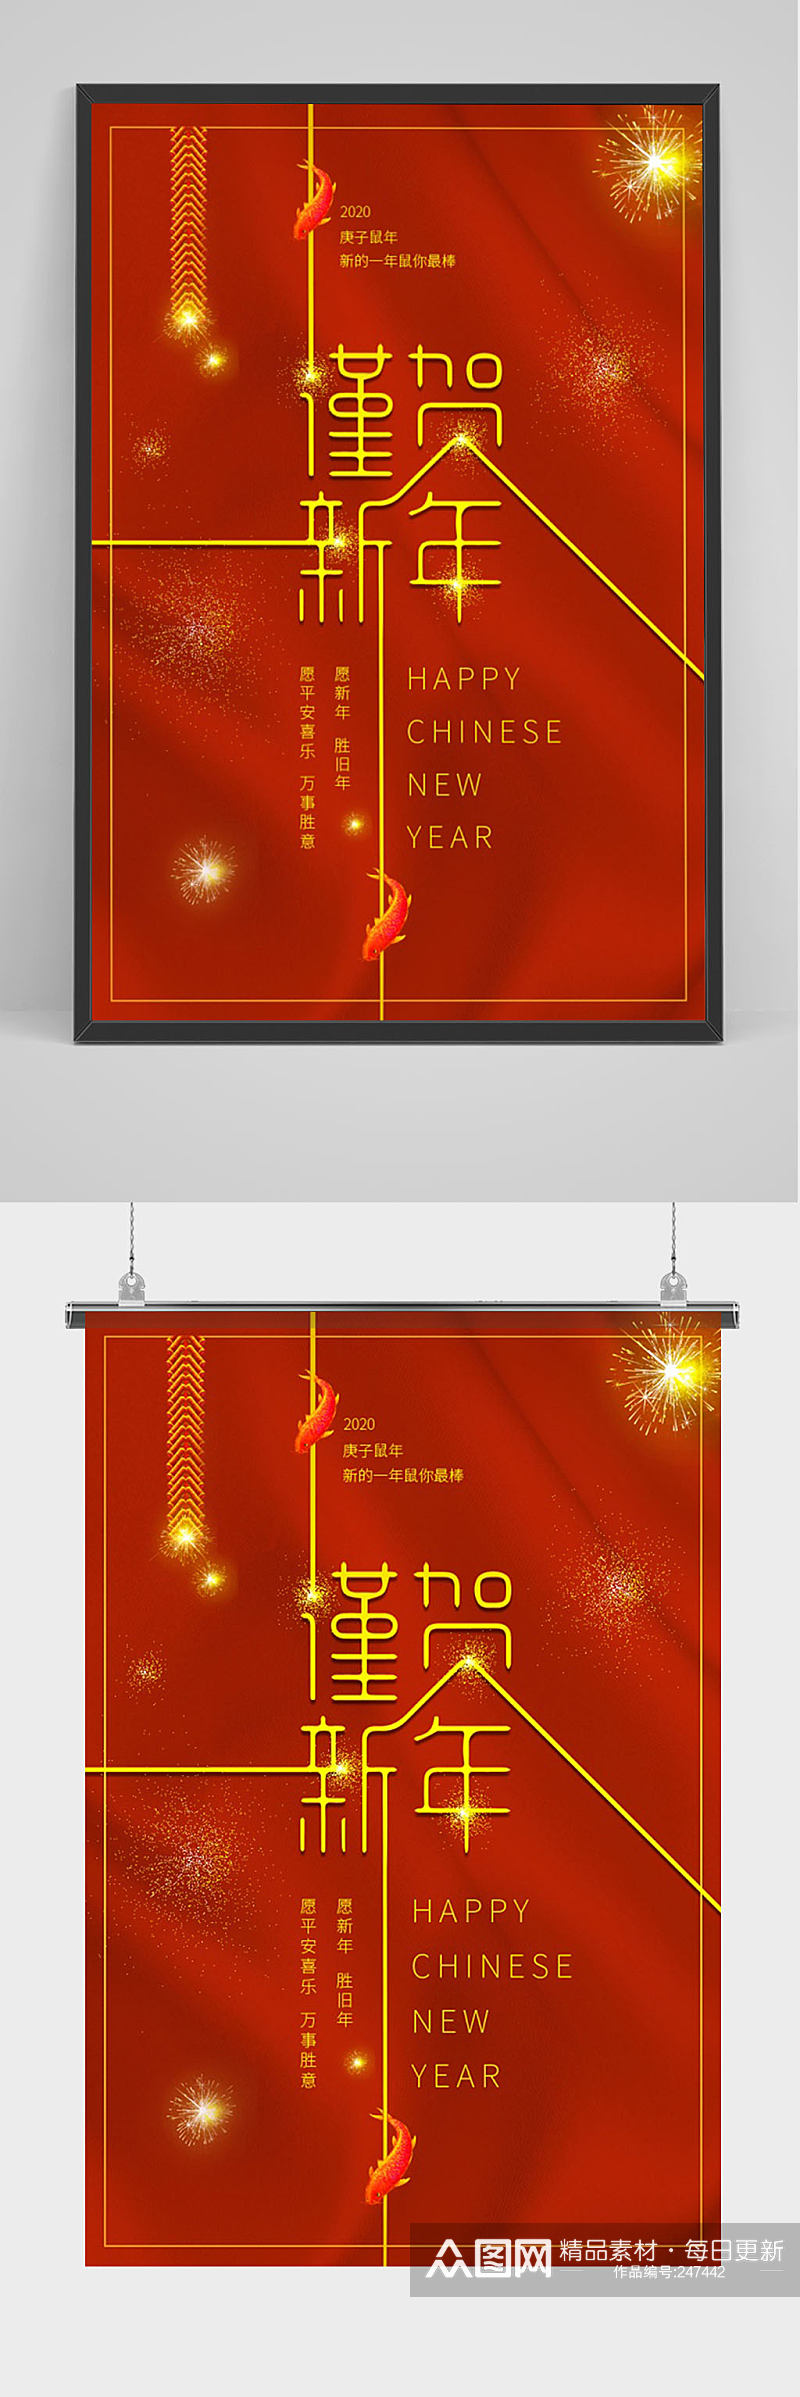 红色谨贺新年宣传海报素材